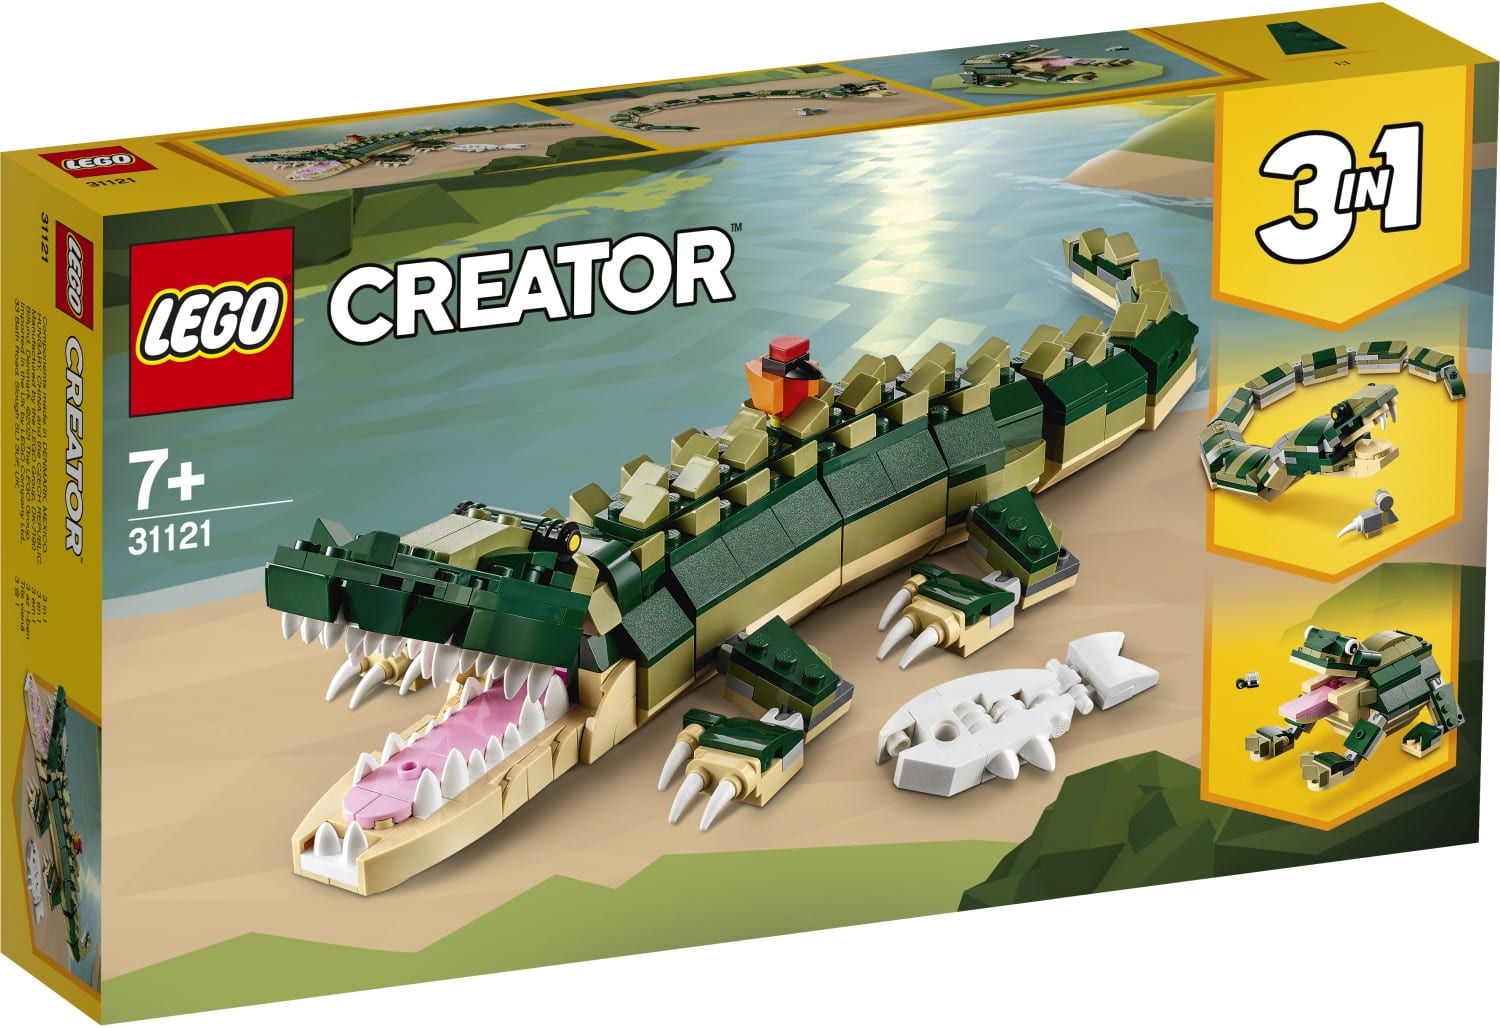 LEGO Creator 3in1